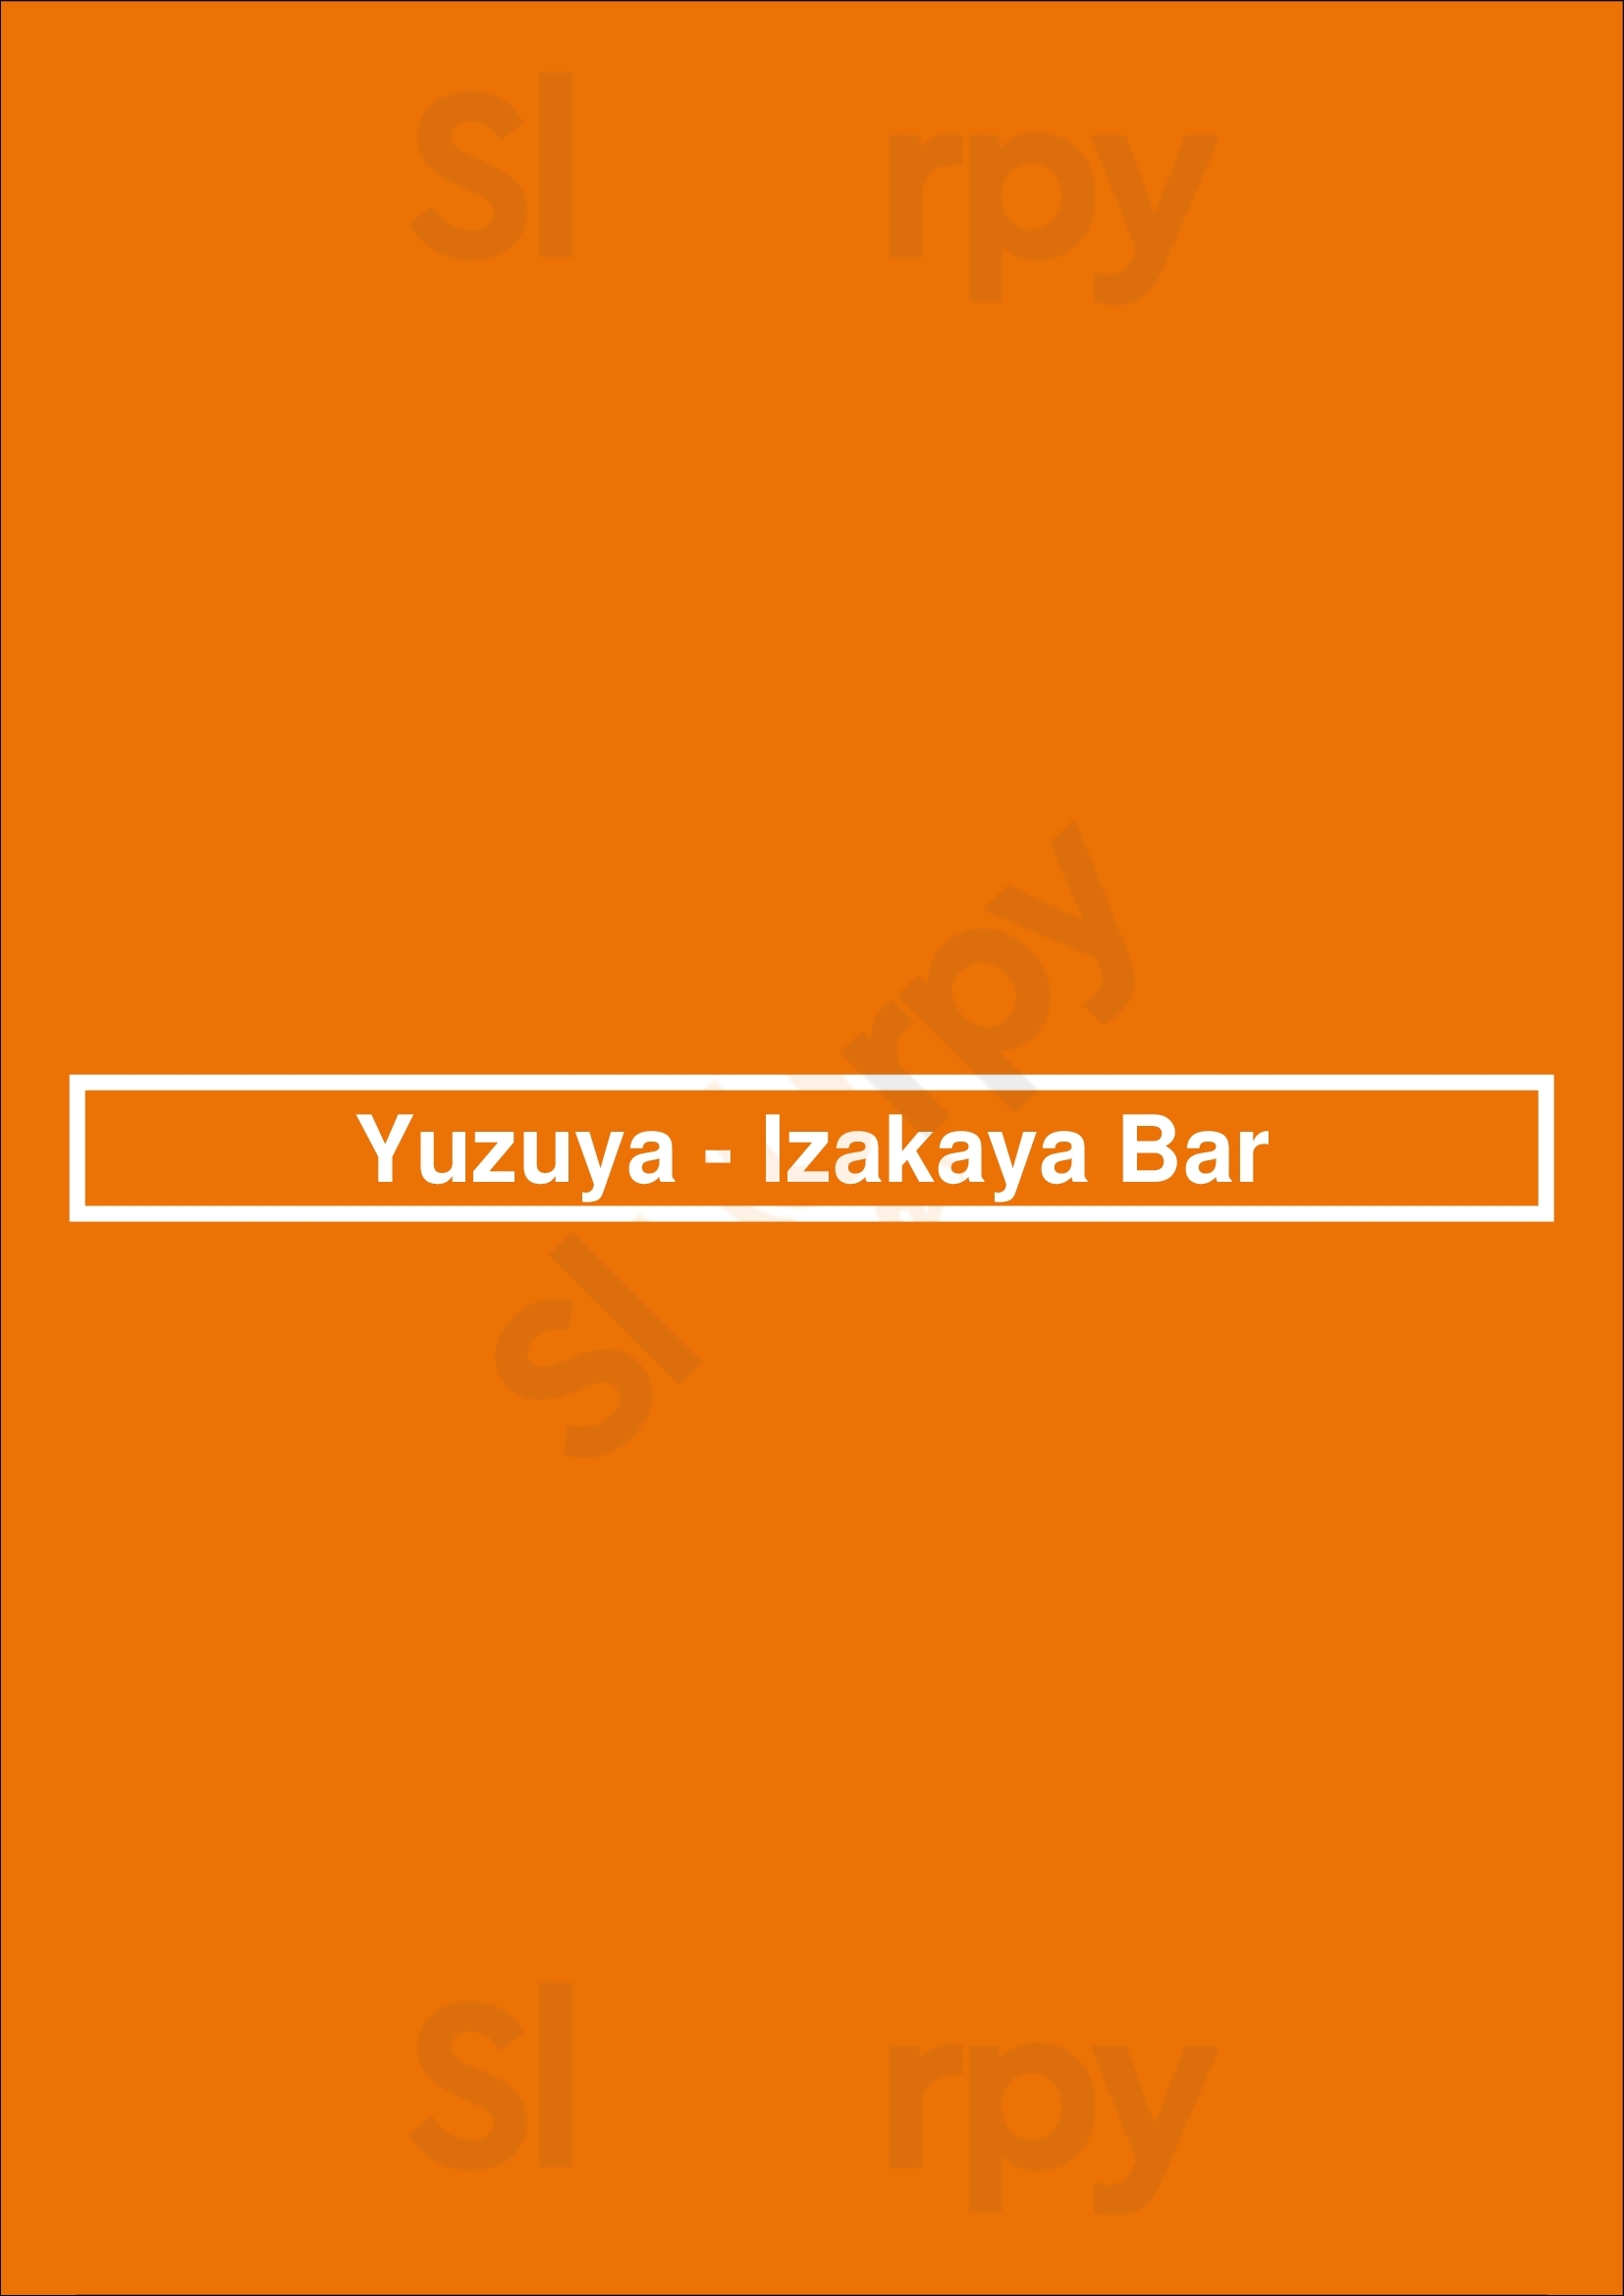 Yuzuya - Izakaya Bar Lyon Menu - 1